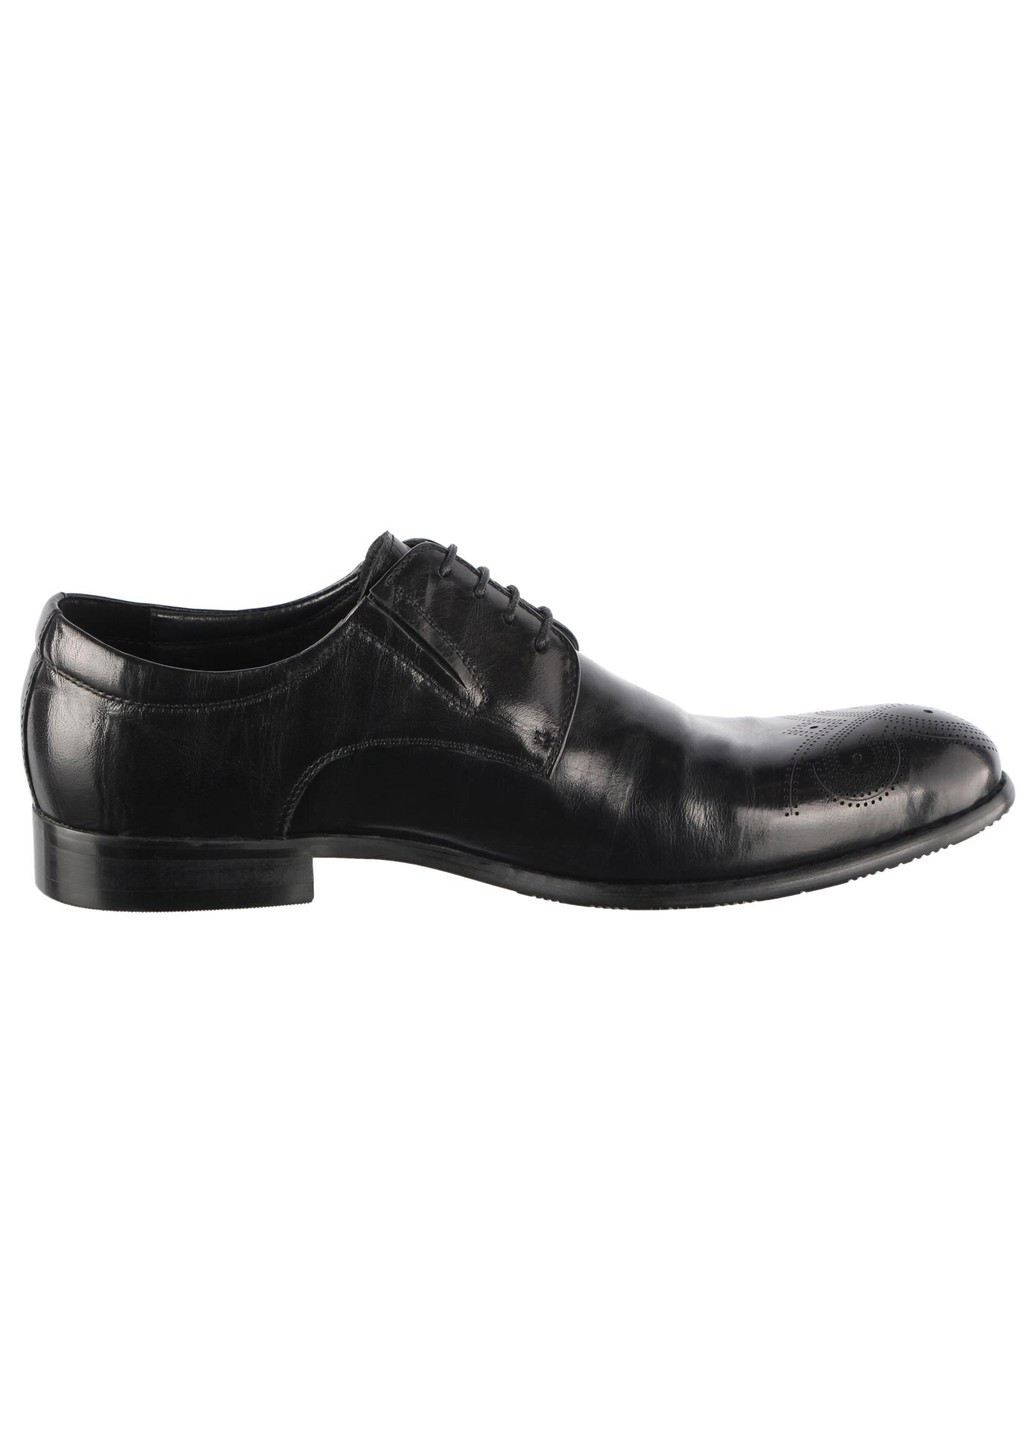 Черные мужские классические туфли 15457 Cosottinni на шнурках